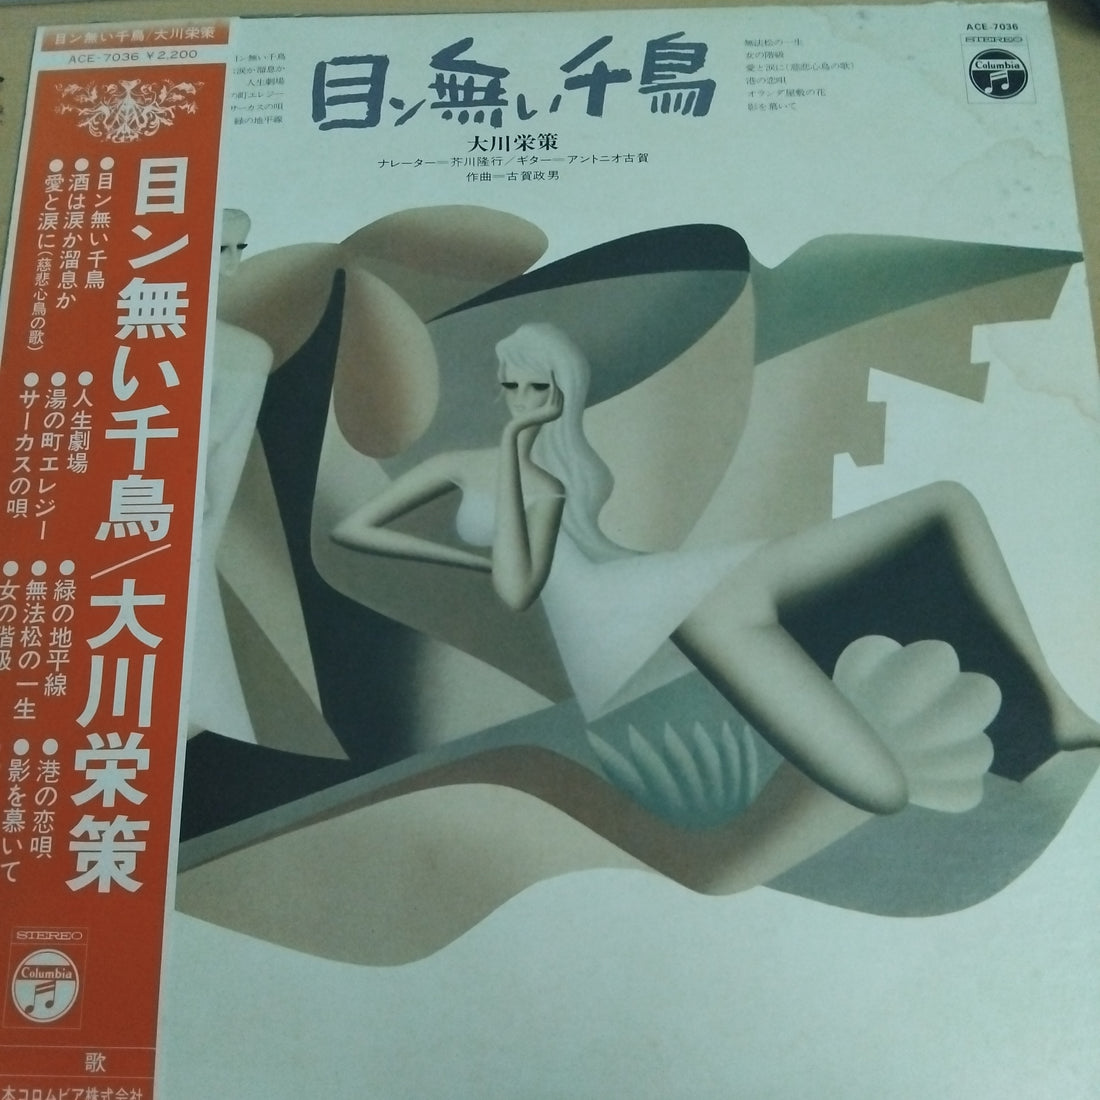 大川栄策 - 目ン無い千鳥 (Vinyl) (VG+)